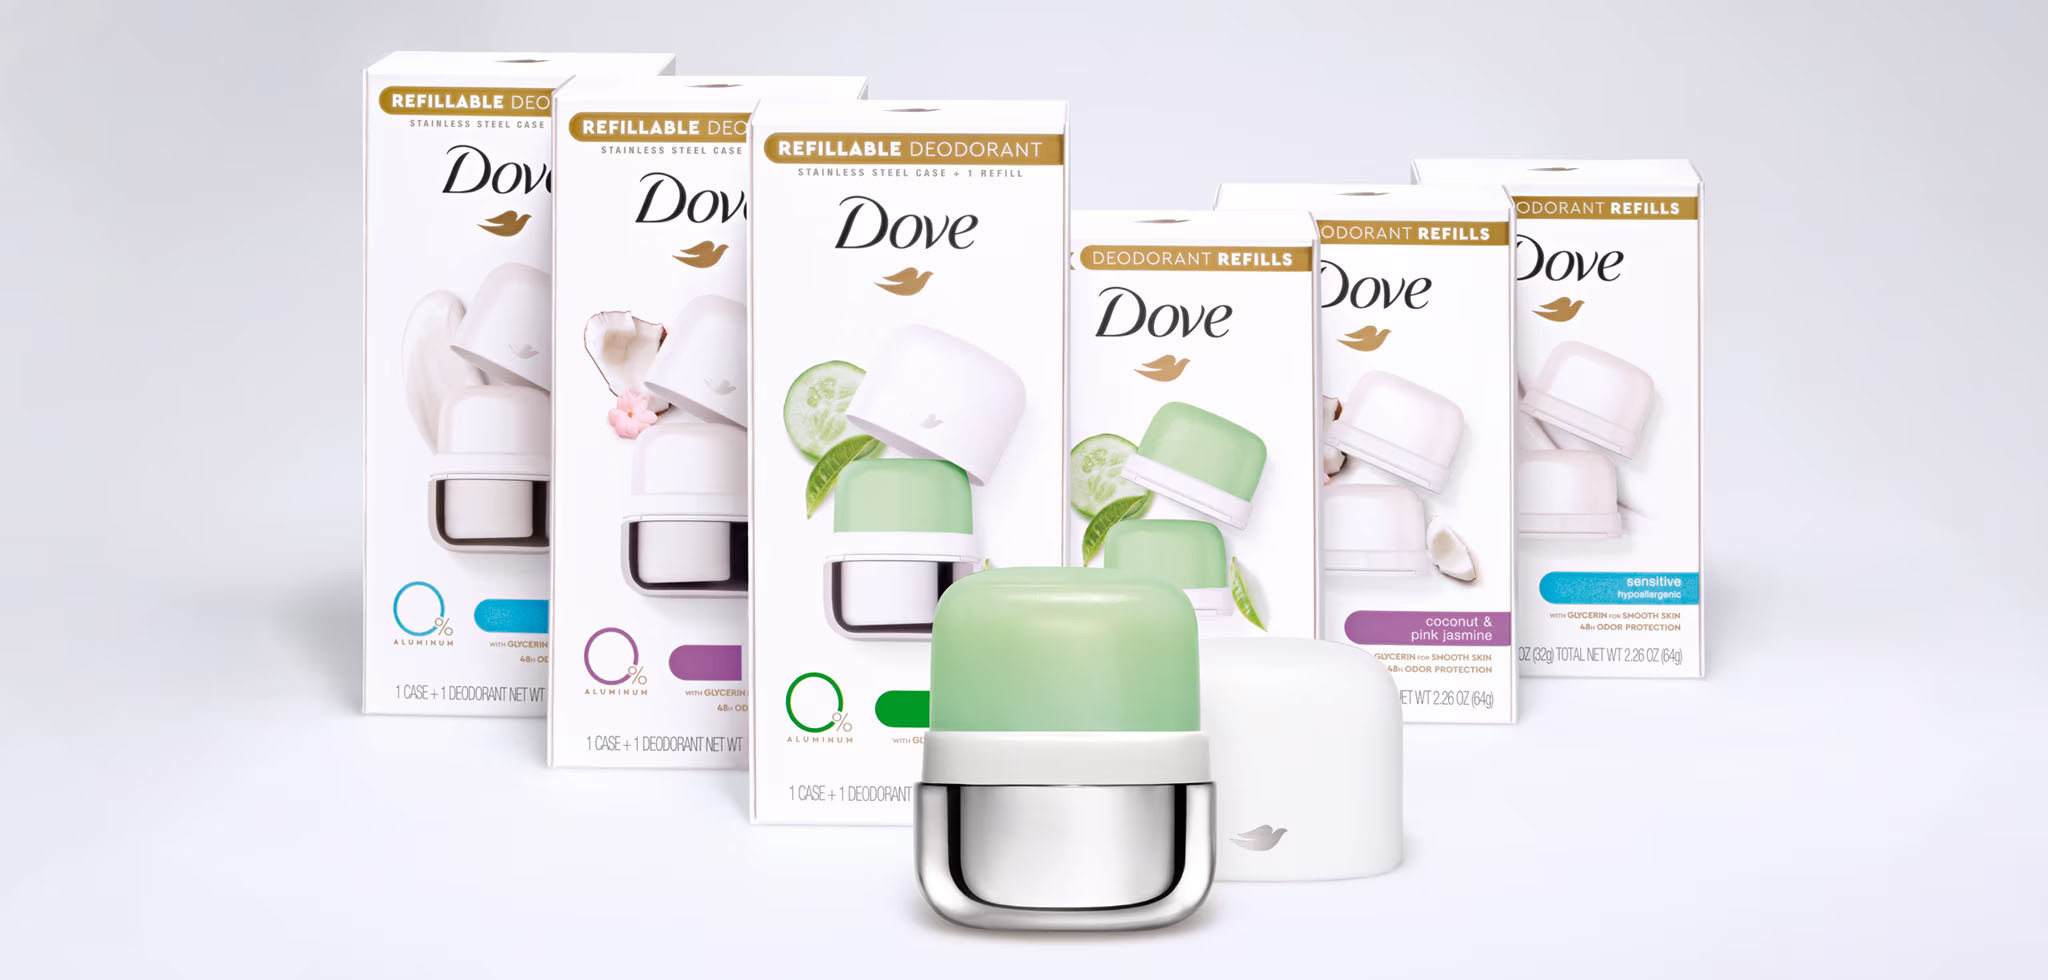 Dove sử dụng thép không gỉ để làm hộp đựng sản phẩm giúp người dùng dễ dàng tái sử dụng. Ảnh: Dove